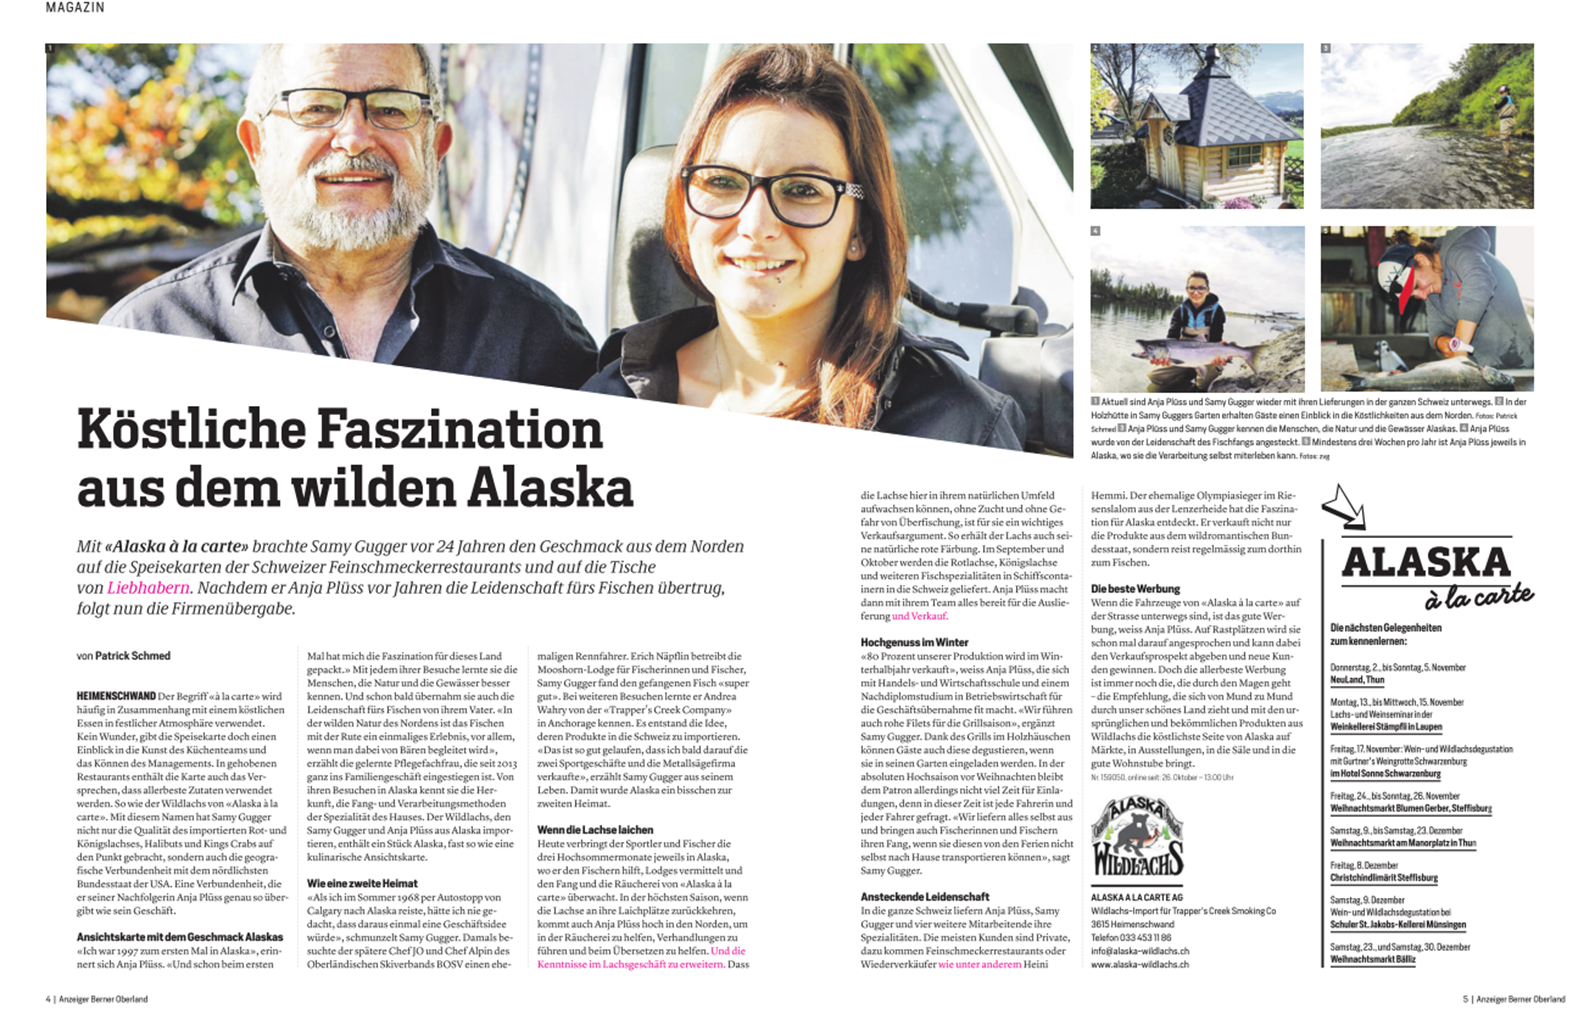 Artikel Jungfrauzeitung Alaska Wildlachs